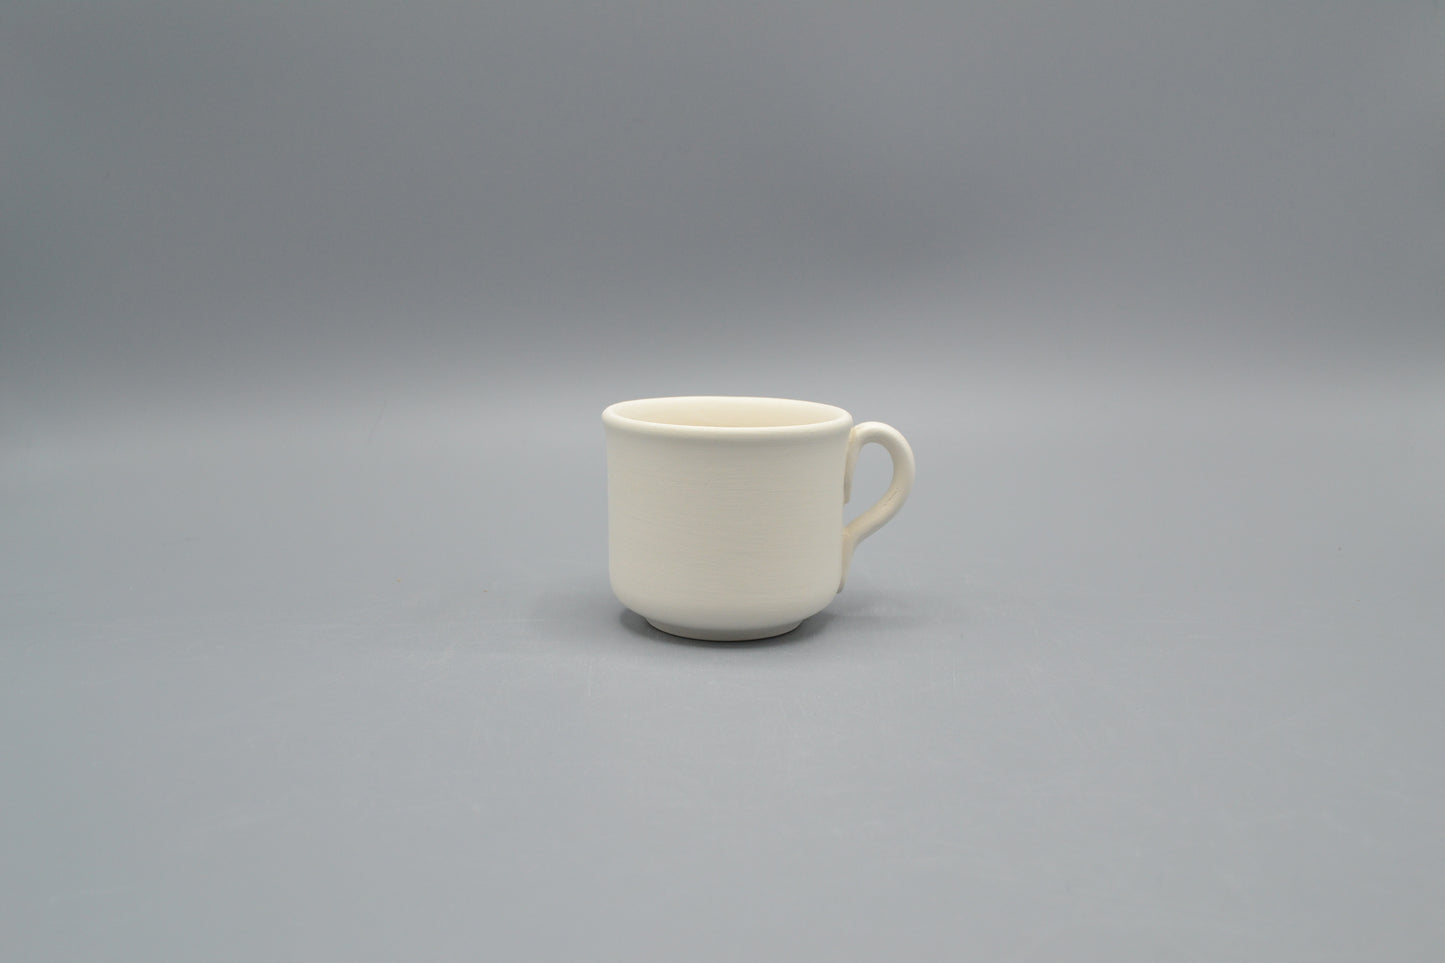 Tazza caffè Cilindrica in ceramica semilavorata GREZZA da dipingere